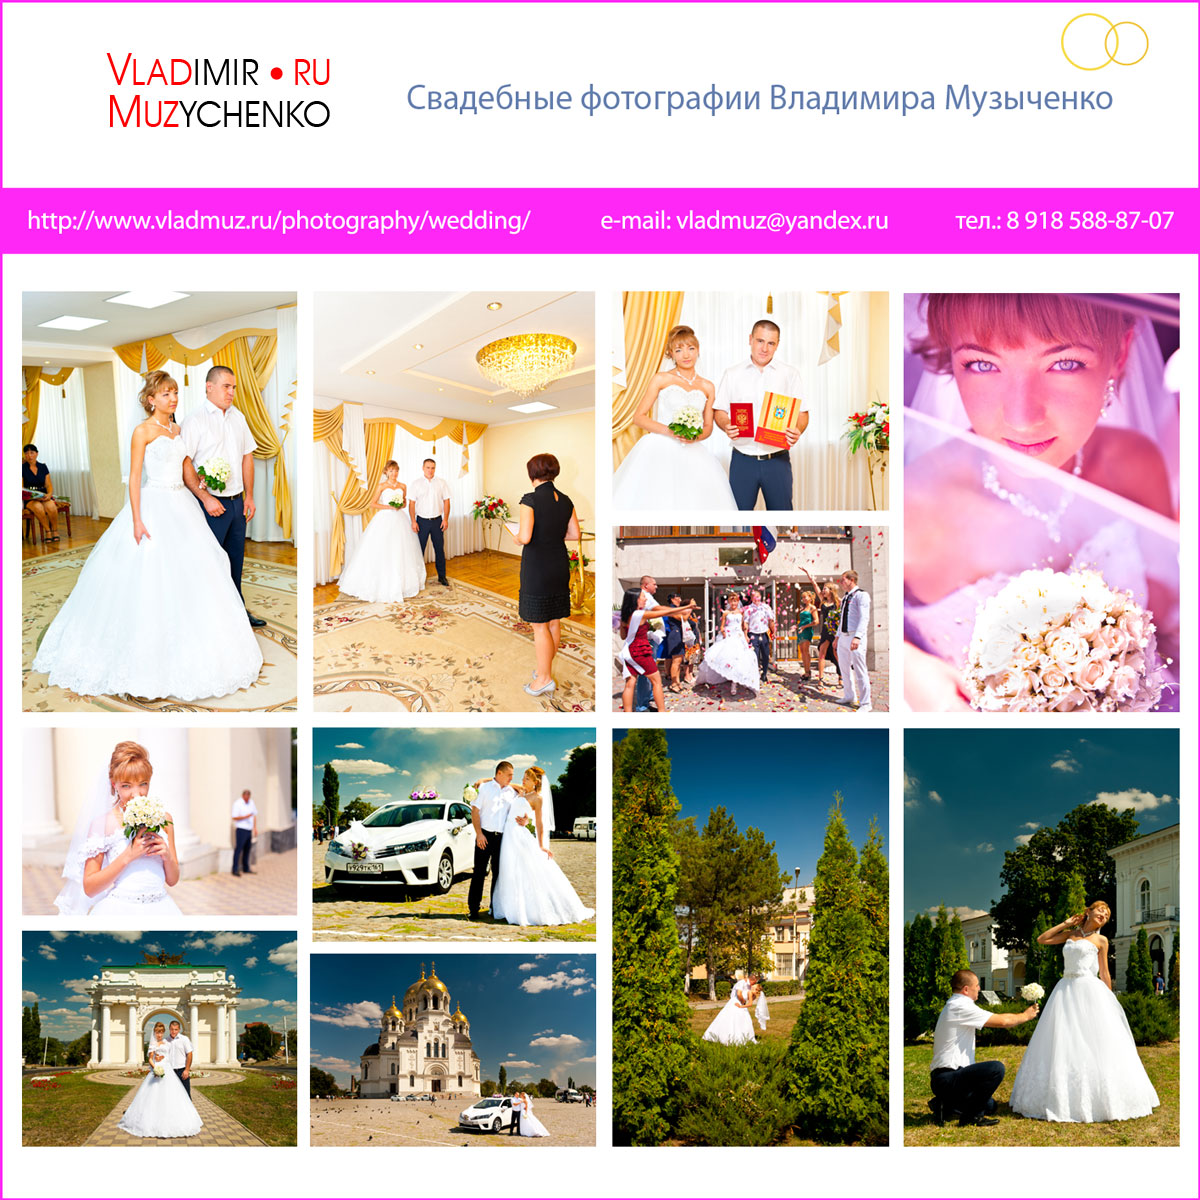 Обложка свадебного DVD-диска с фотографиями свадеб в Новочеркасске